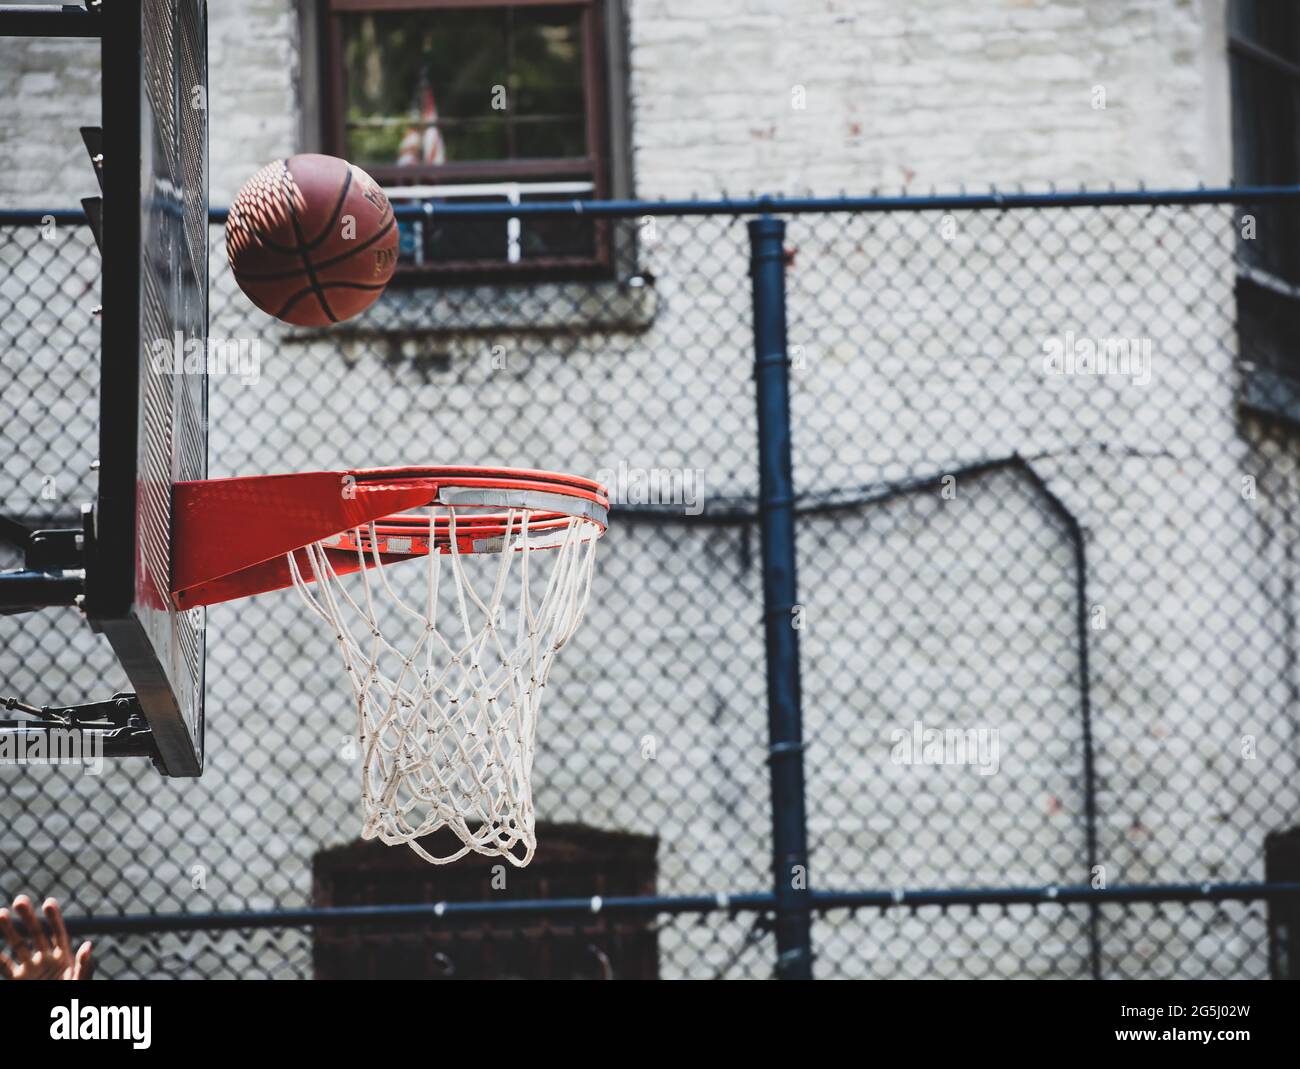 Basketballkorb in einer Nachbarschaft in New Yor. Der Ball springt vom Brett bereit zu geben. Stockfoto